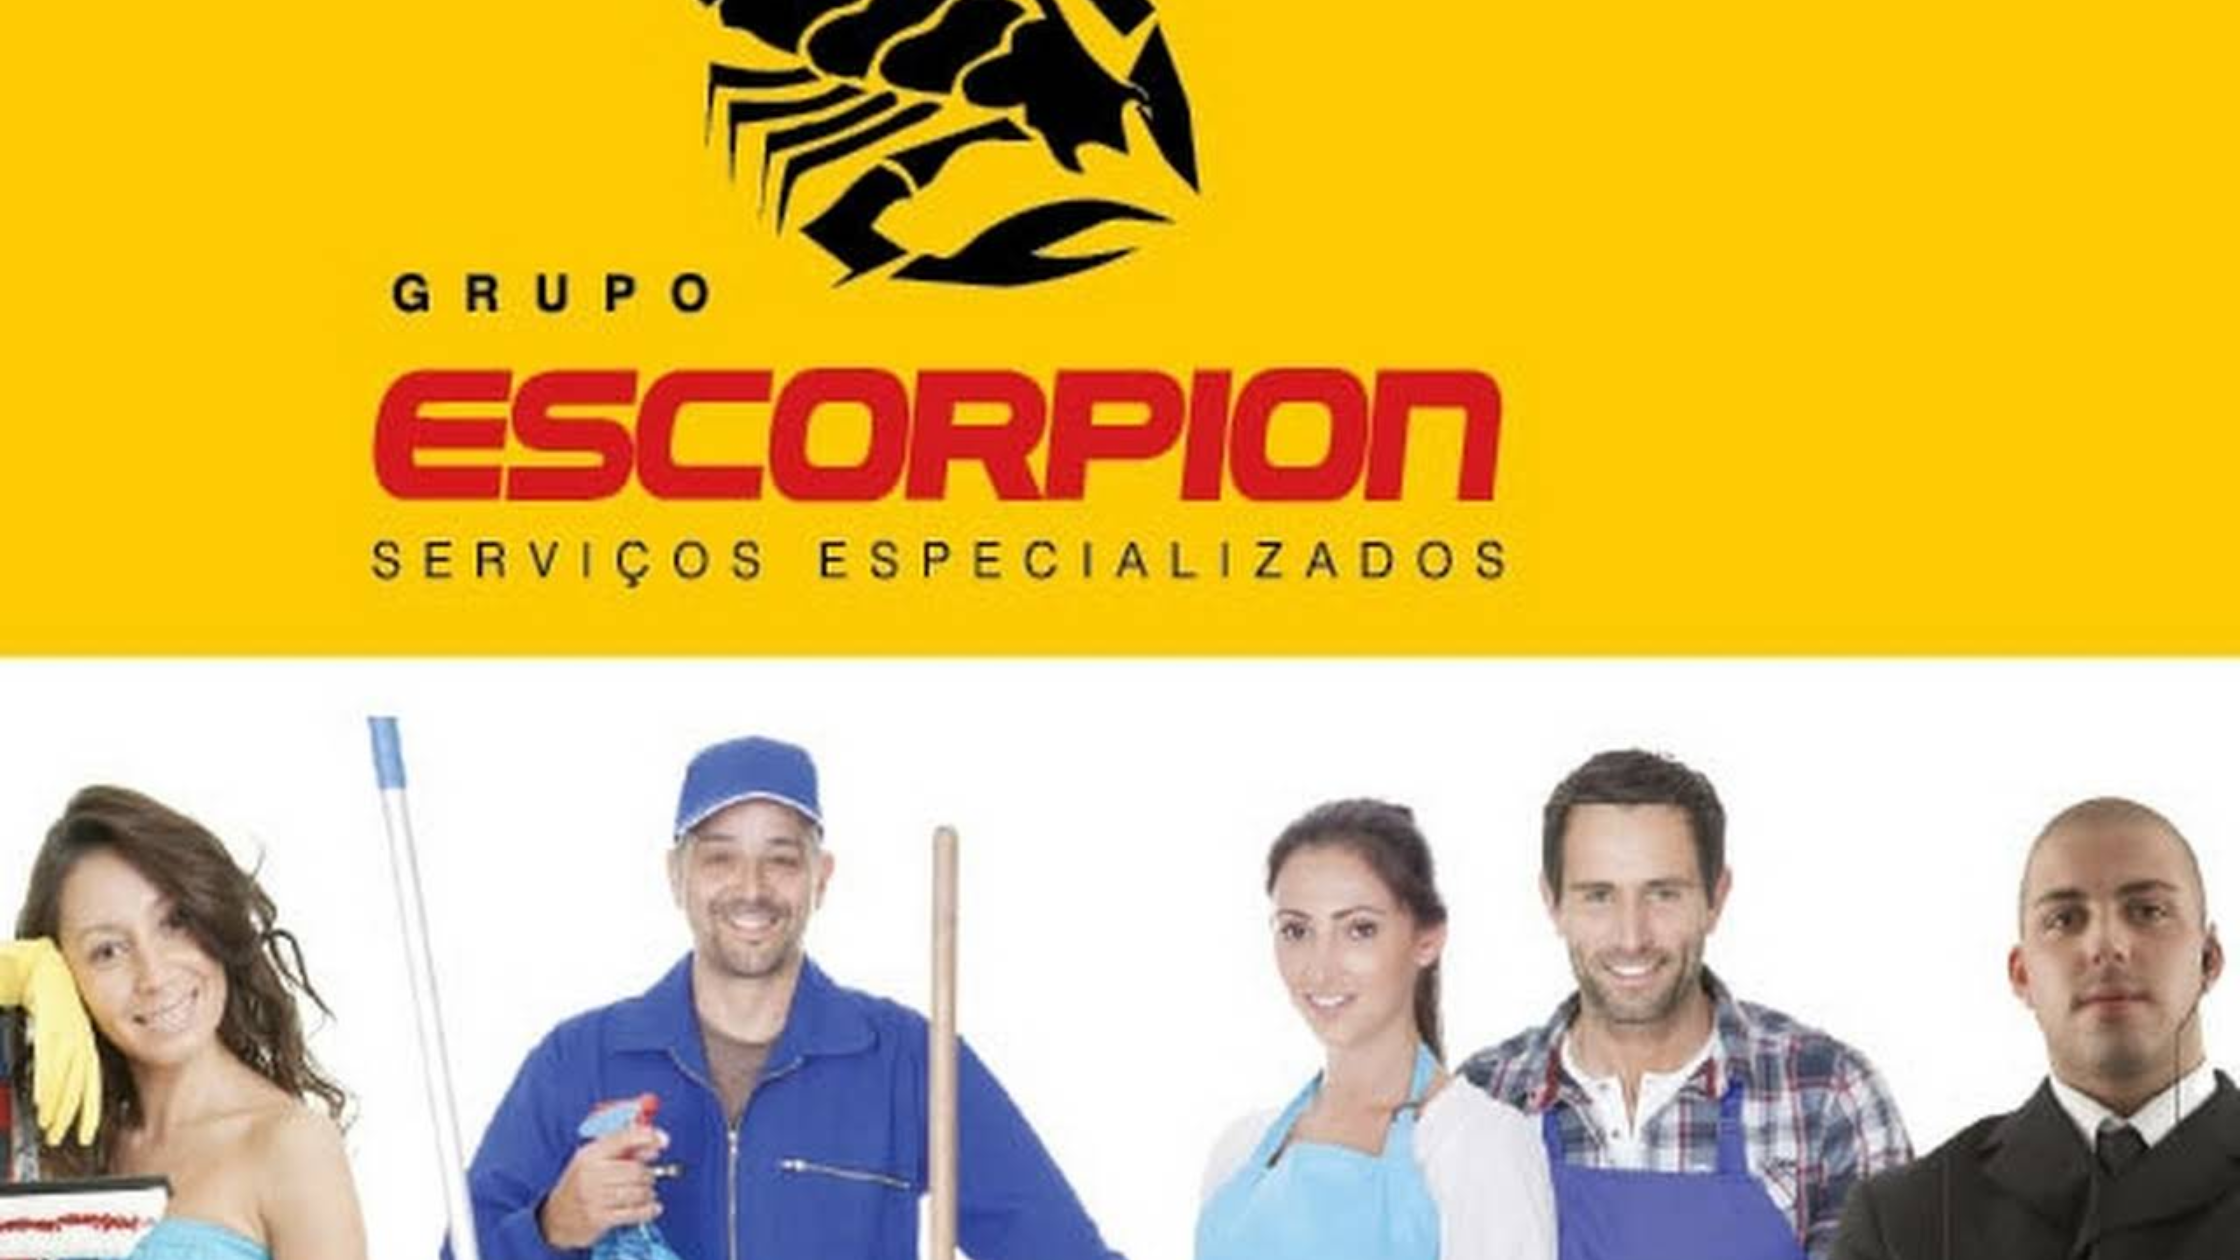 Grupo Escorpion está contratando Agente Patrimonial